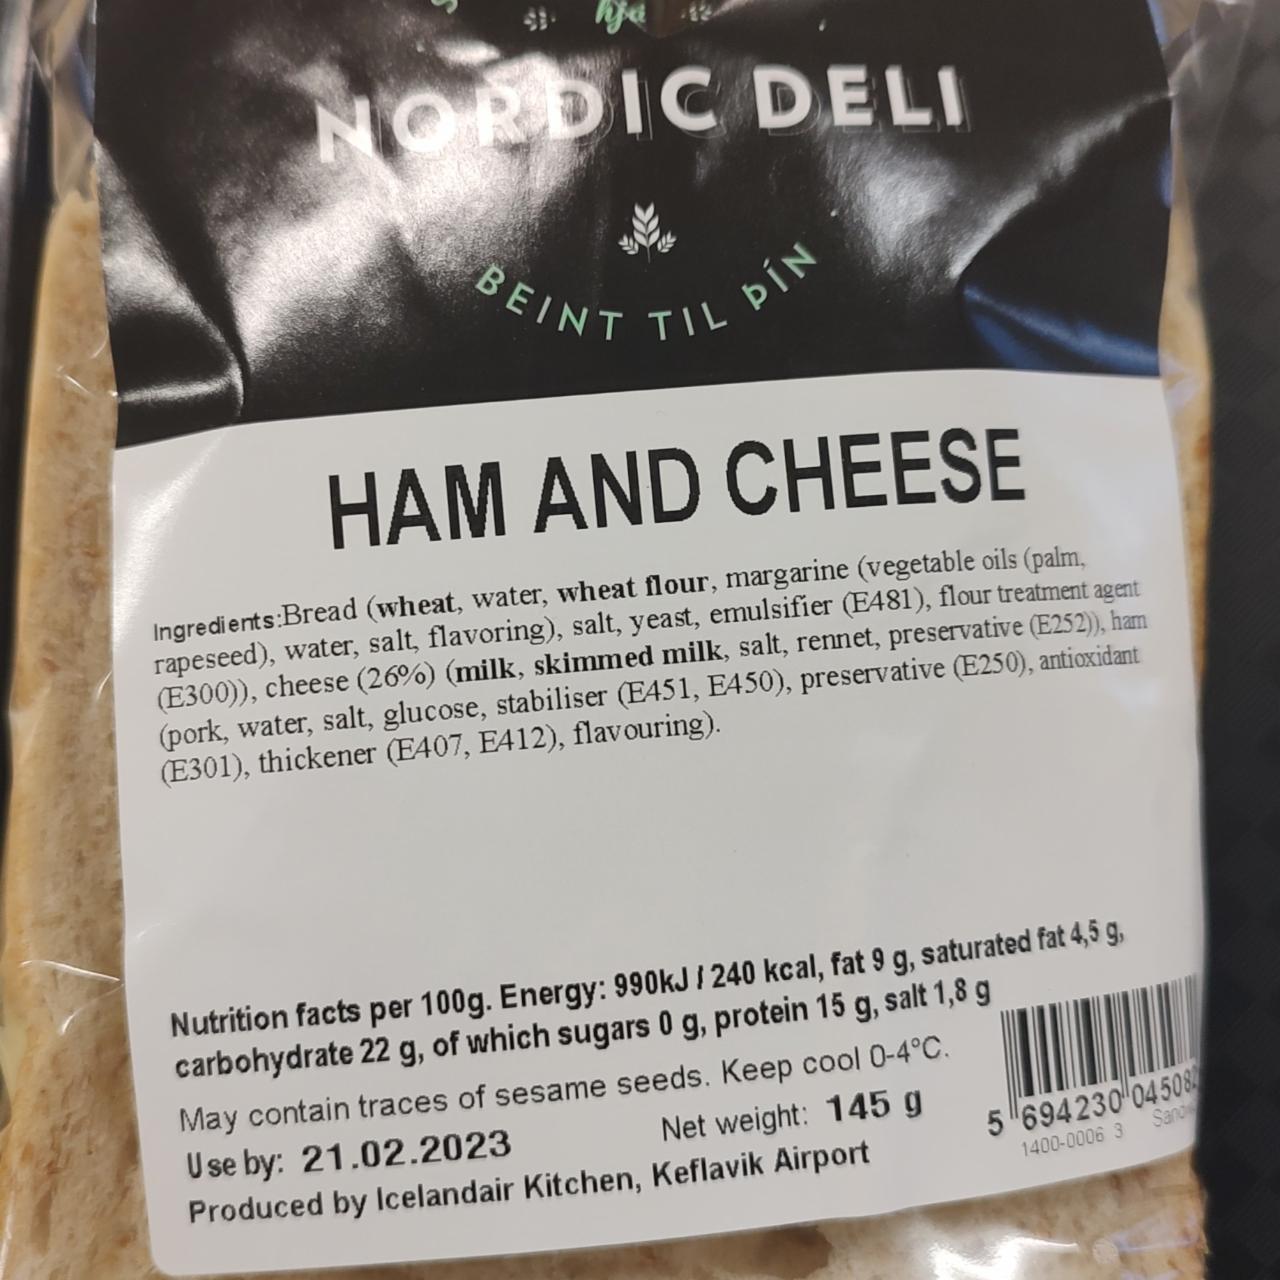 Zdjęcia - Ham and cheese Nordic Deli